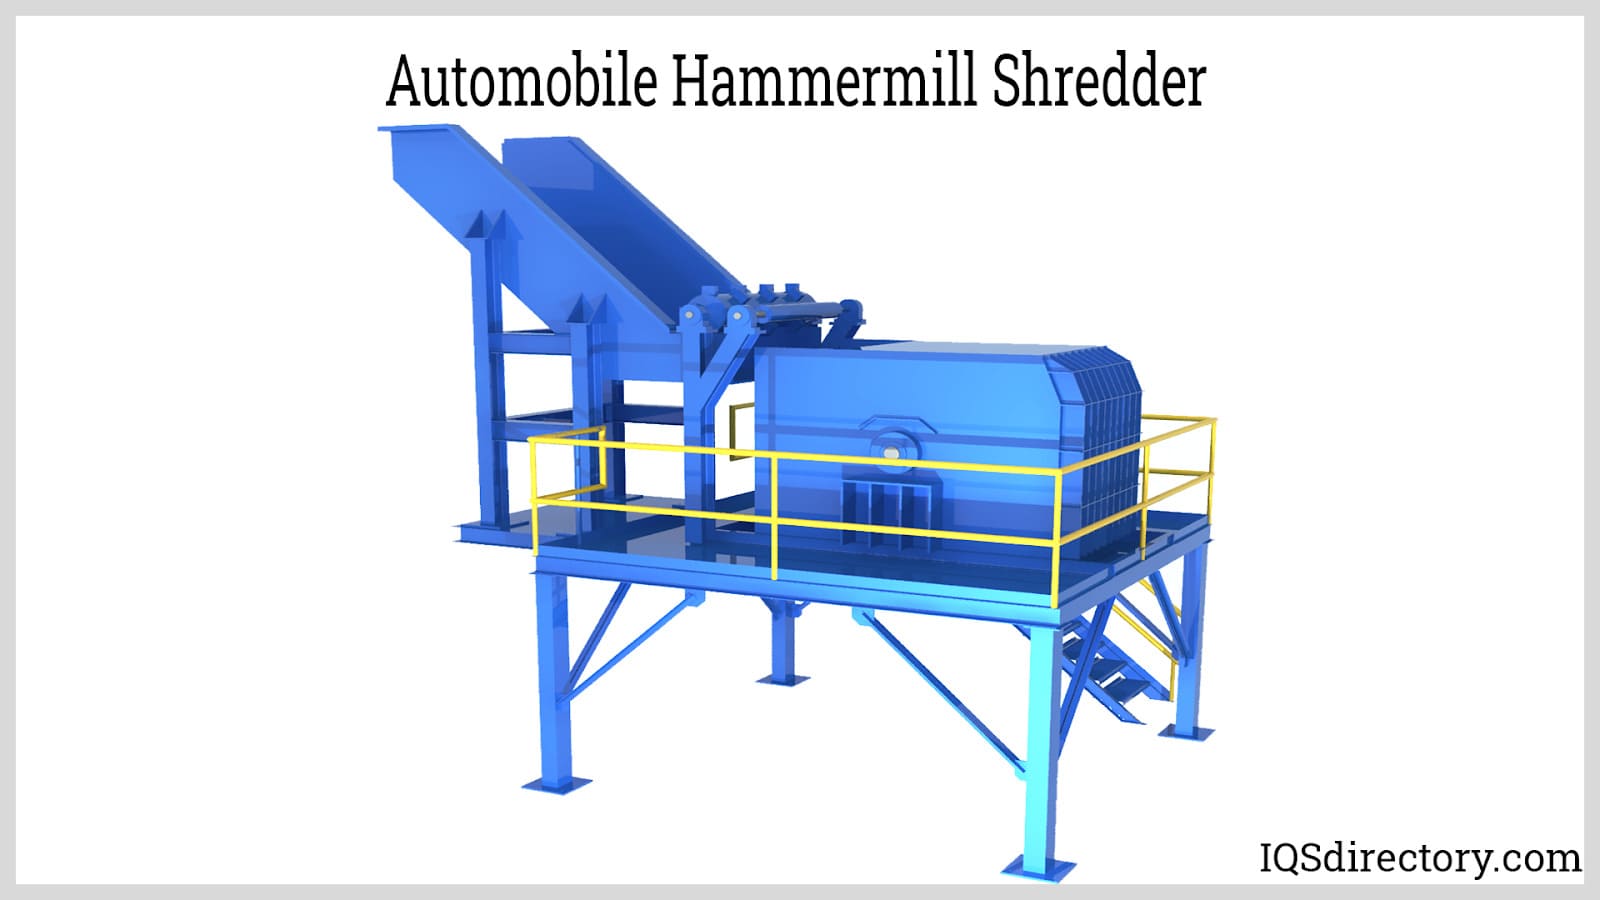 Automobile Hammermill Shredder